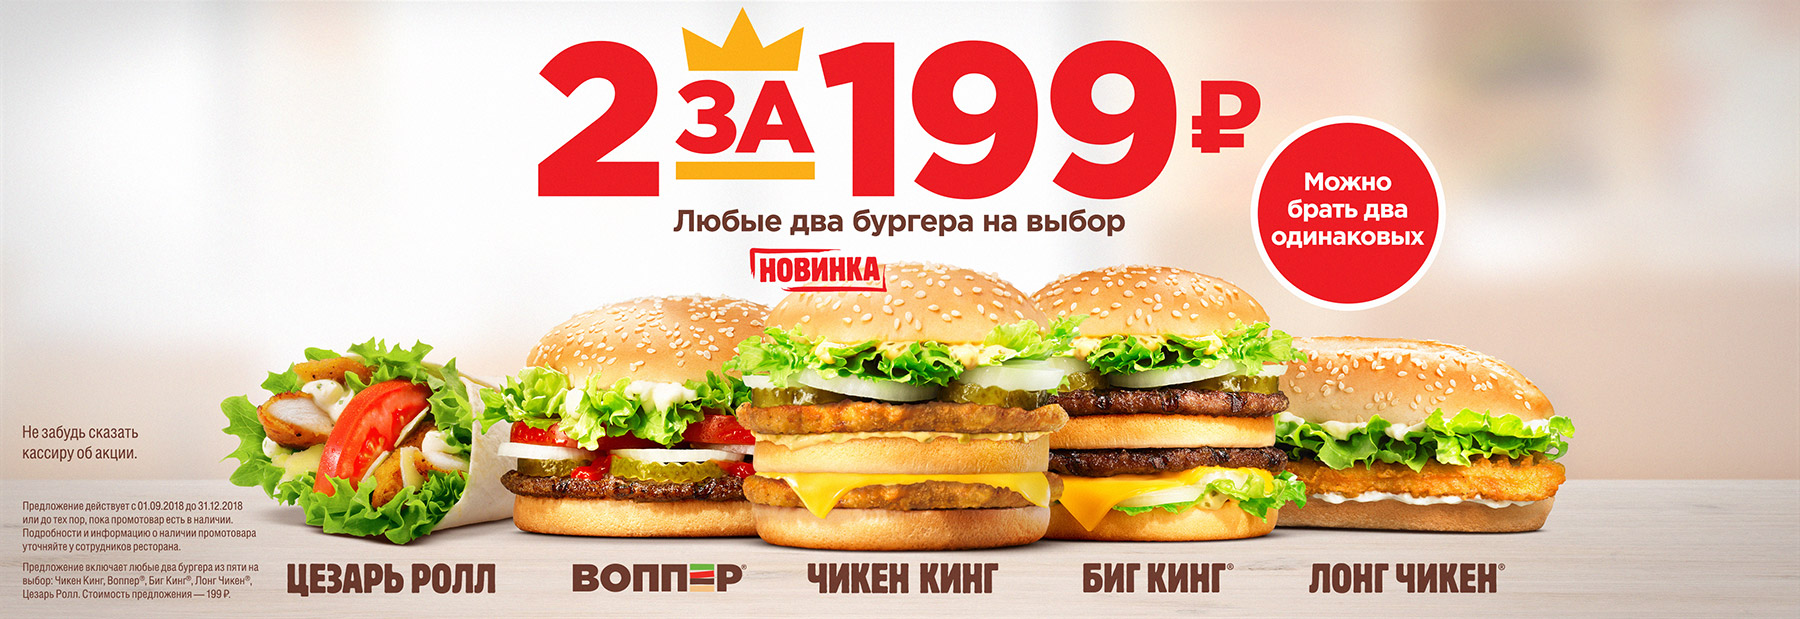 Рекламная акция Бургер Кинг «2 за 199»